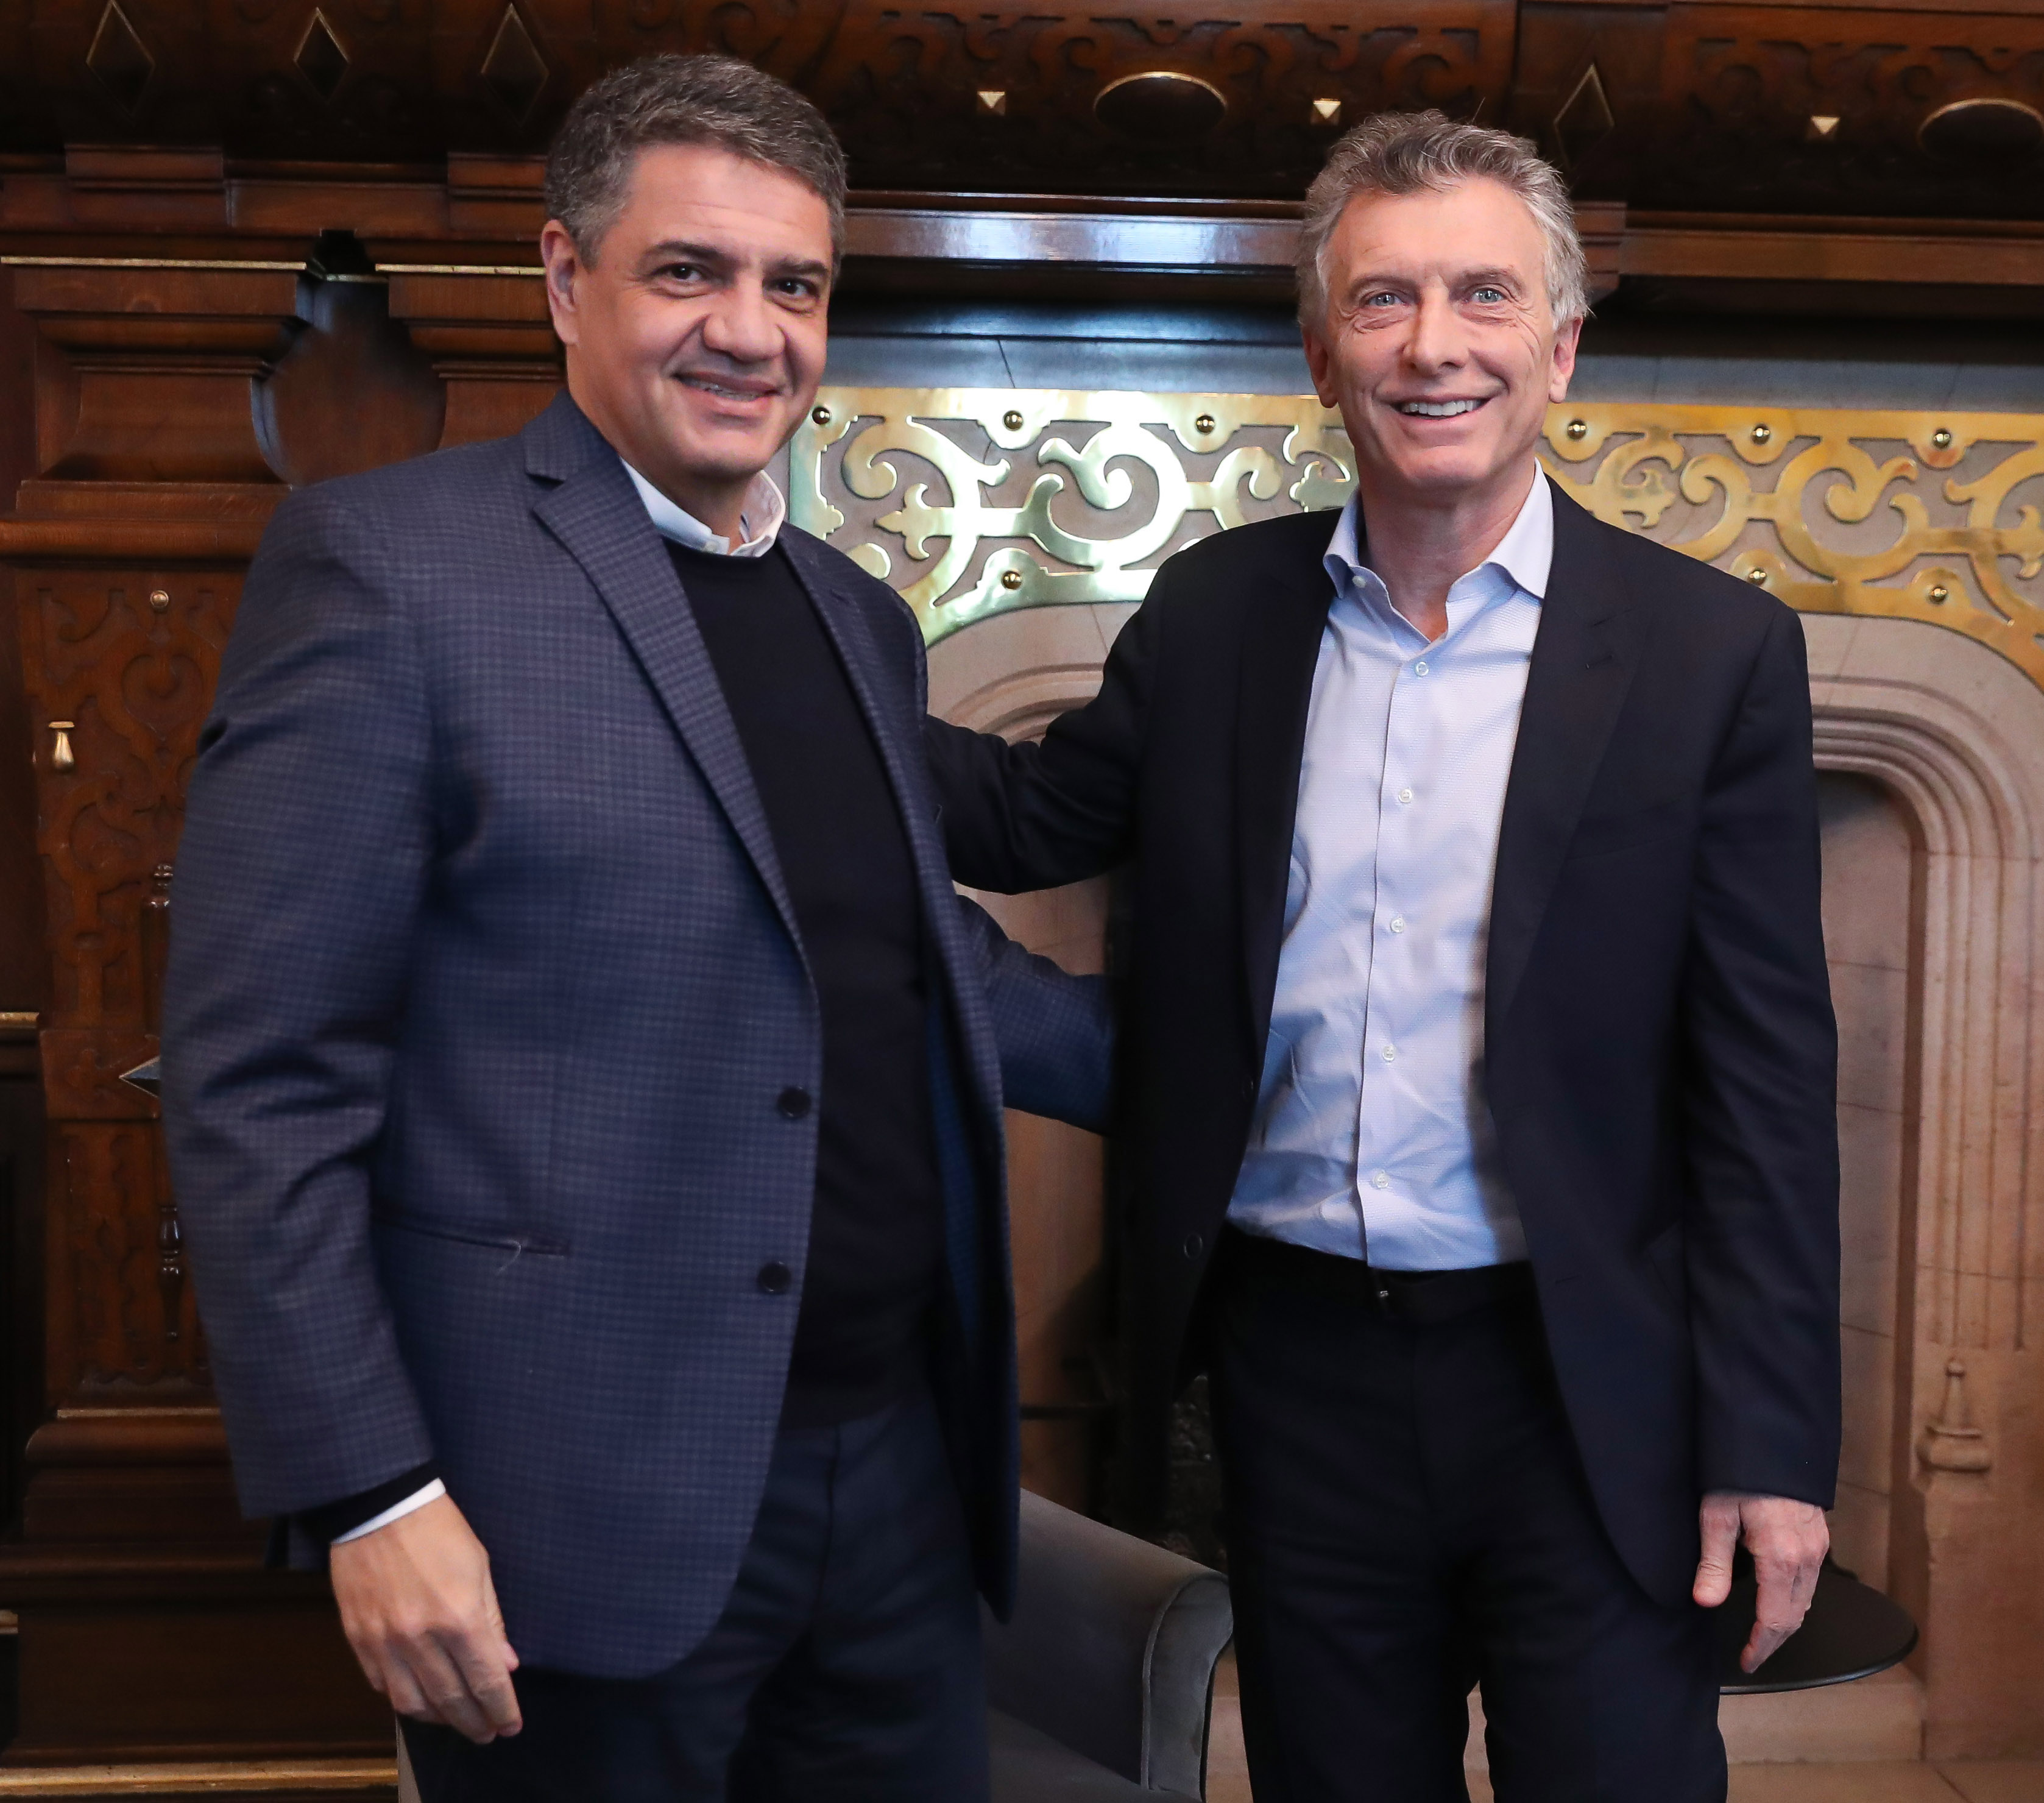 Macri recibió al intendente de Vicente López